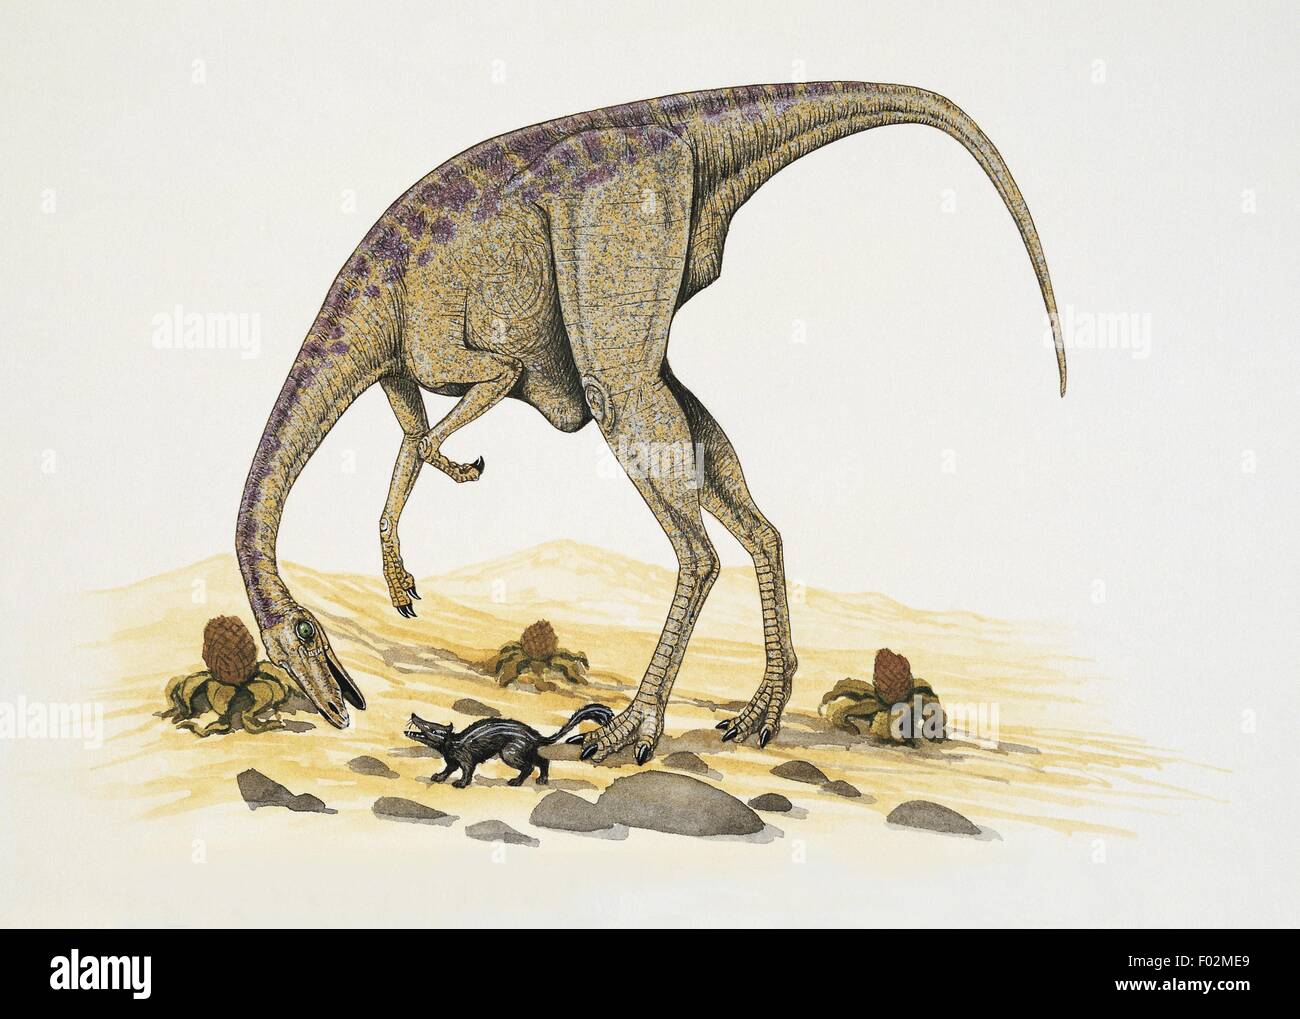 Paléozoologie - Crétacé - Dinosaures - Archaeornithomimus (art par Graham Rosewarne) Banque D'Images